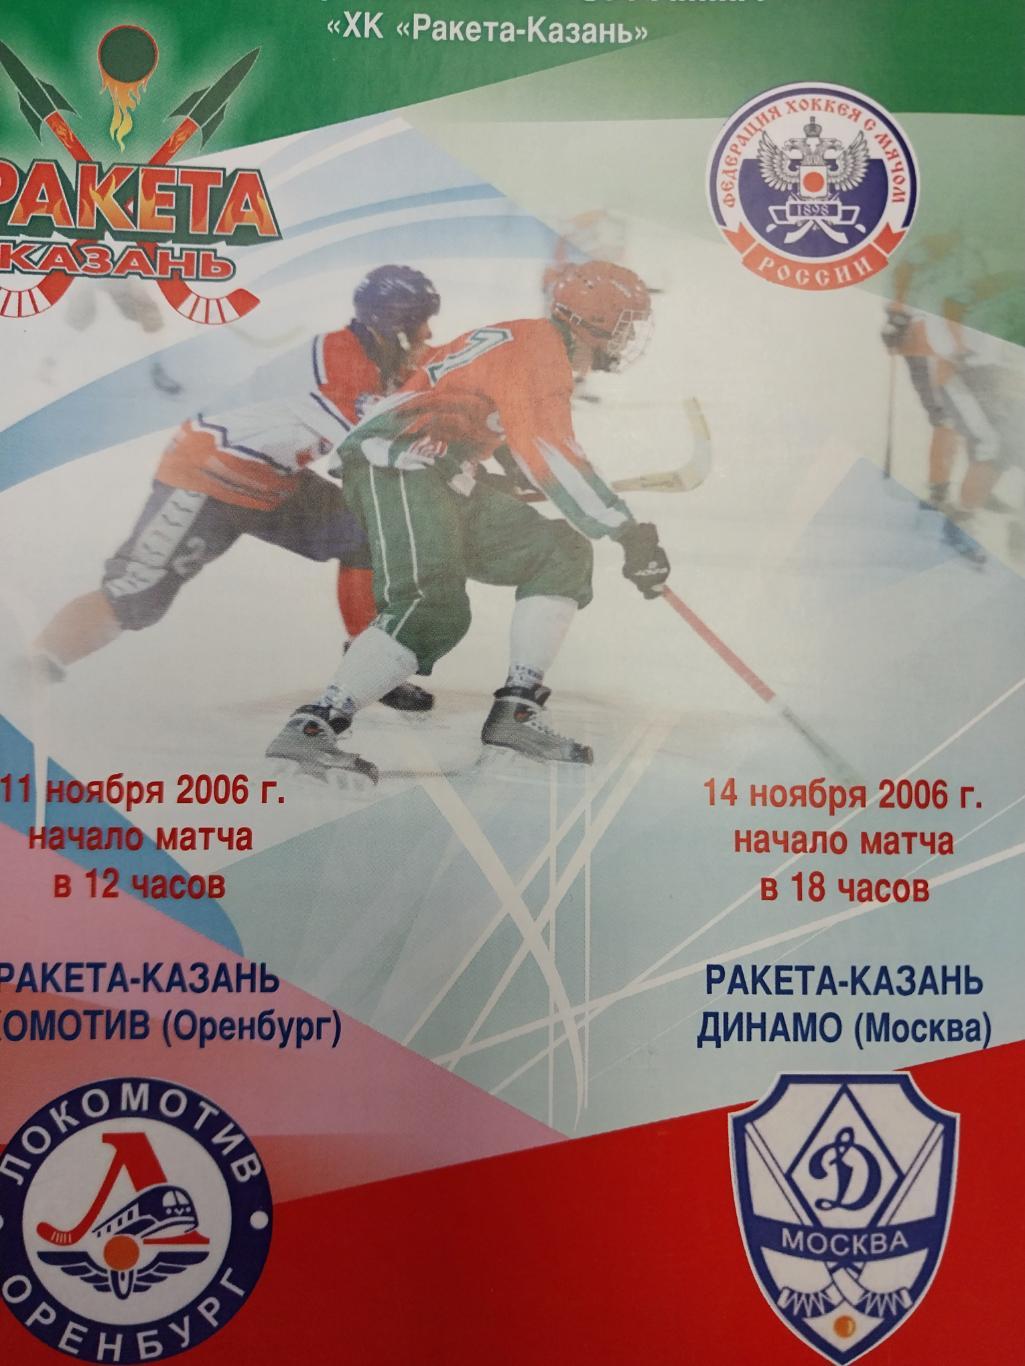 Ракета (Казань) - Локомотив (Оренбург), Динамо (Москва) 11 и 14.11.2006